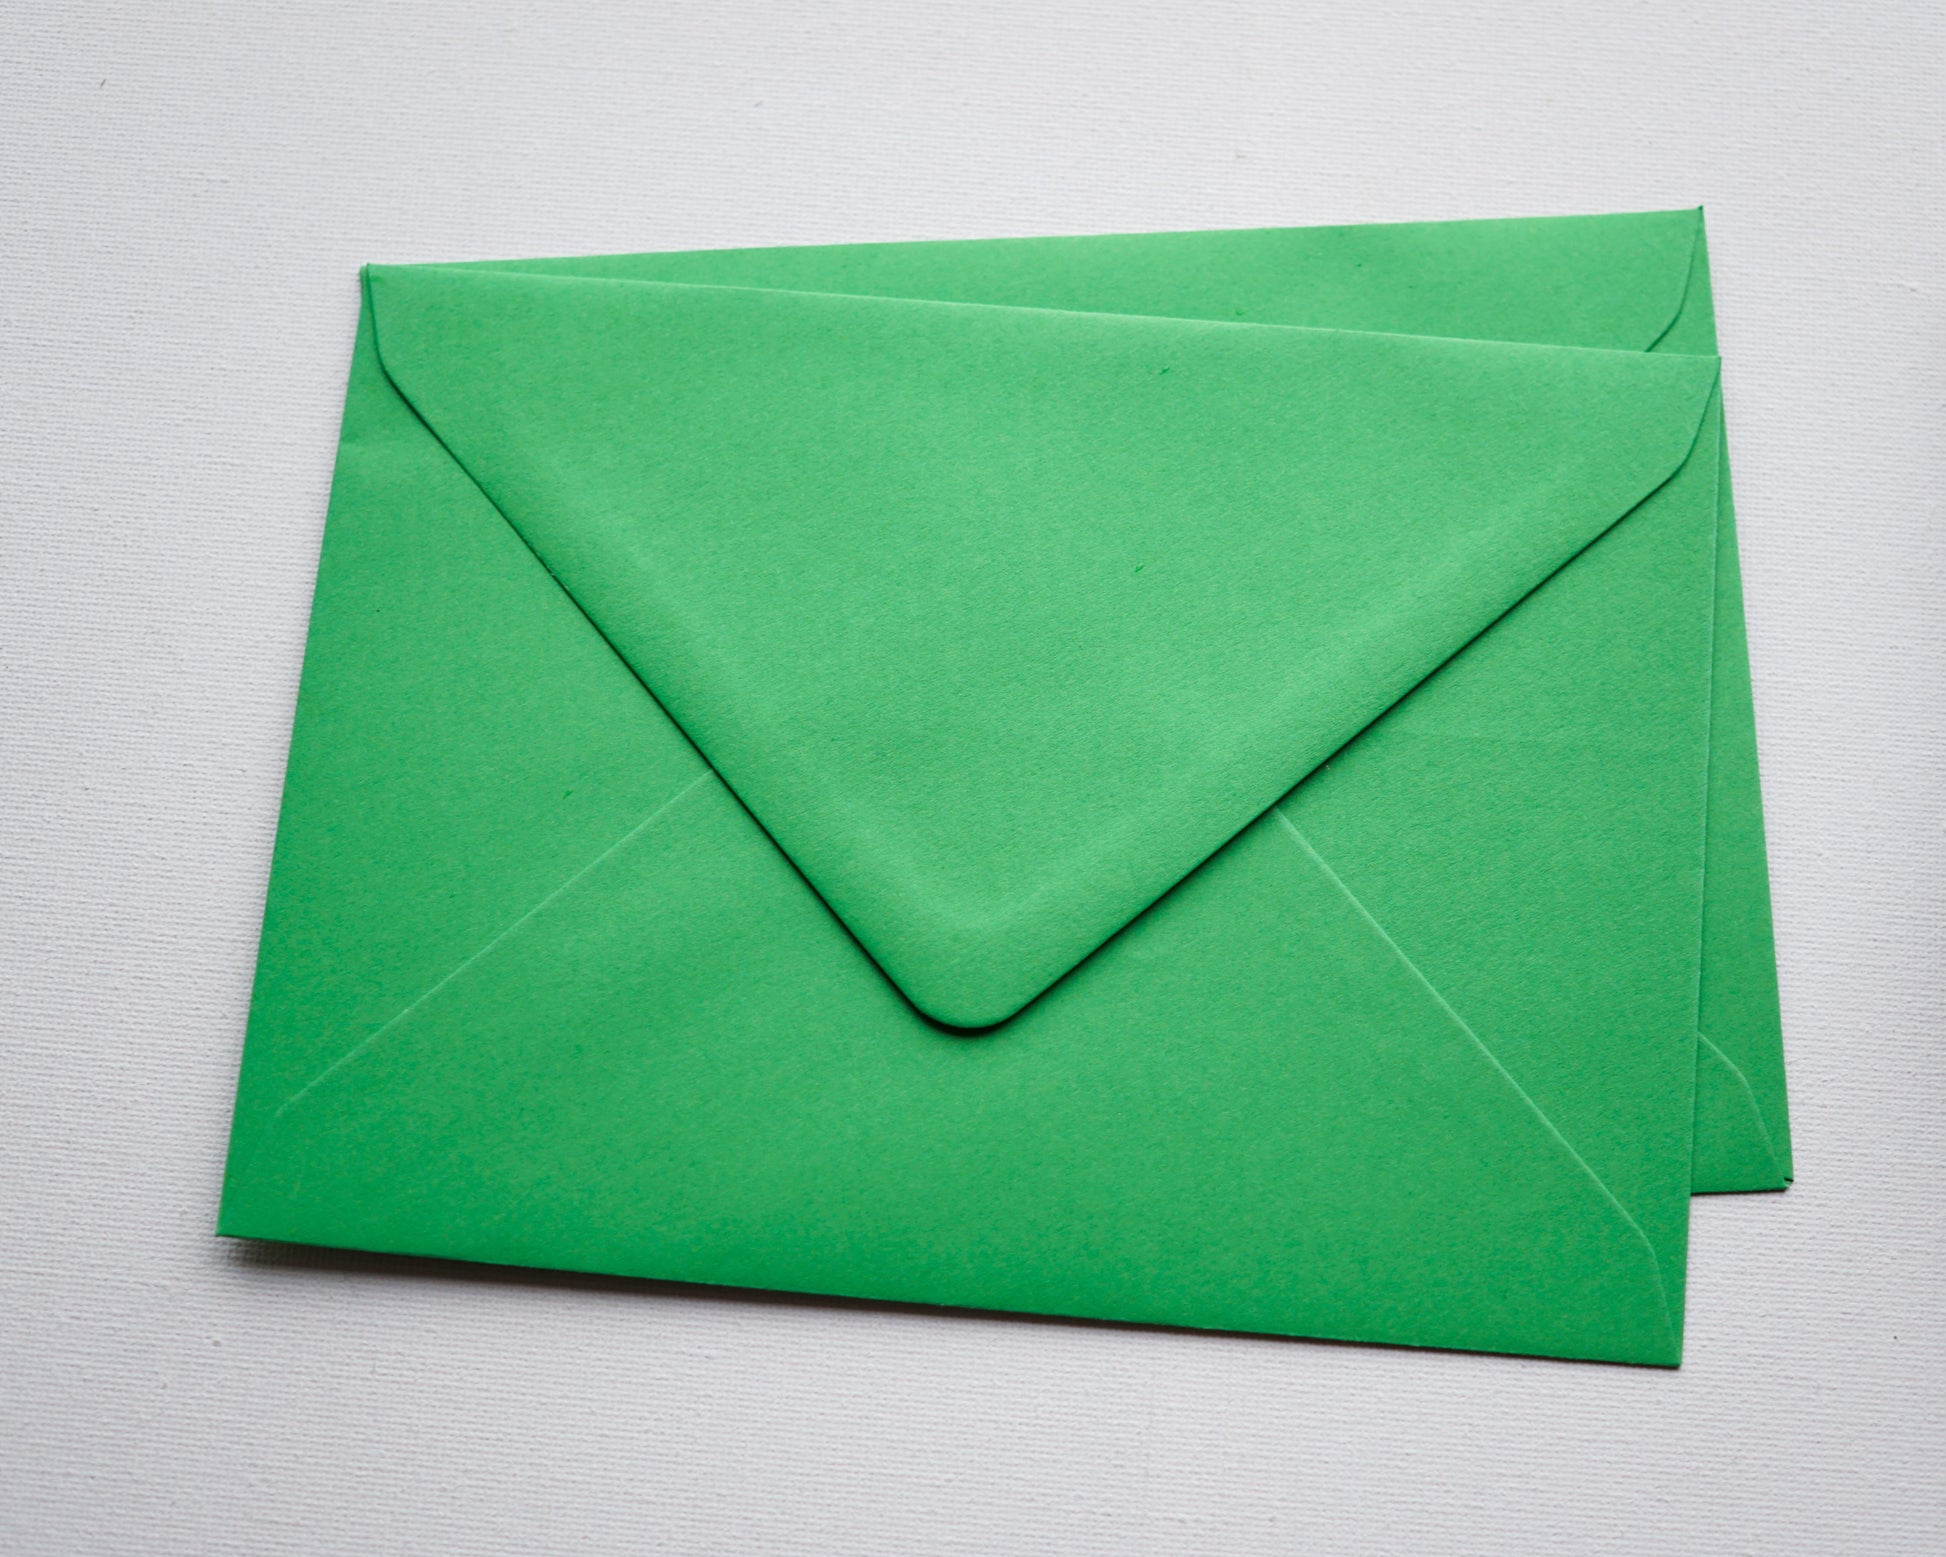 Zöld díszboríték i8 - 13,3 x 18,4 cm.-Boríték-i8 - 13.3 x 18.4 cm -boríték, zöld boríték - plicuri colorate - plicuri speciale -Erdélyi Esküvői Meghívók